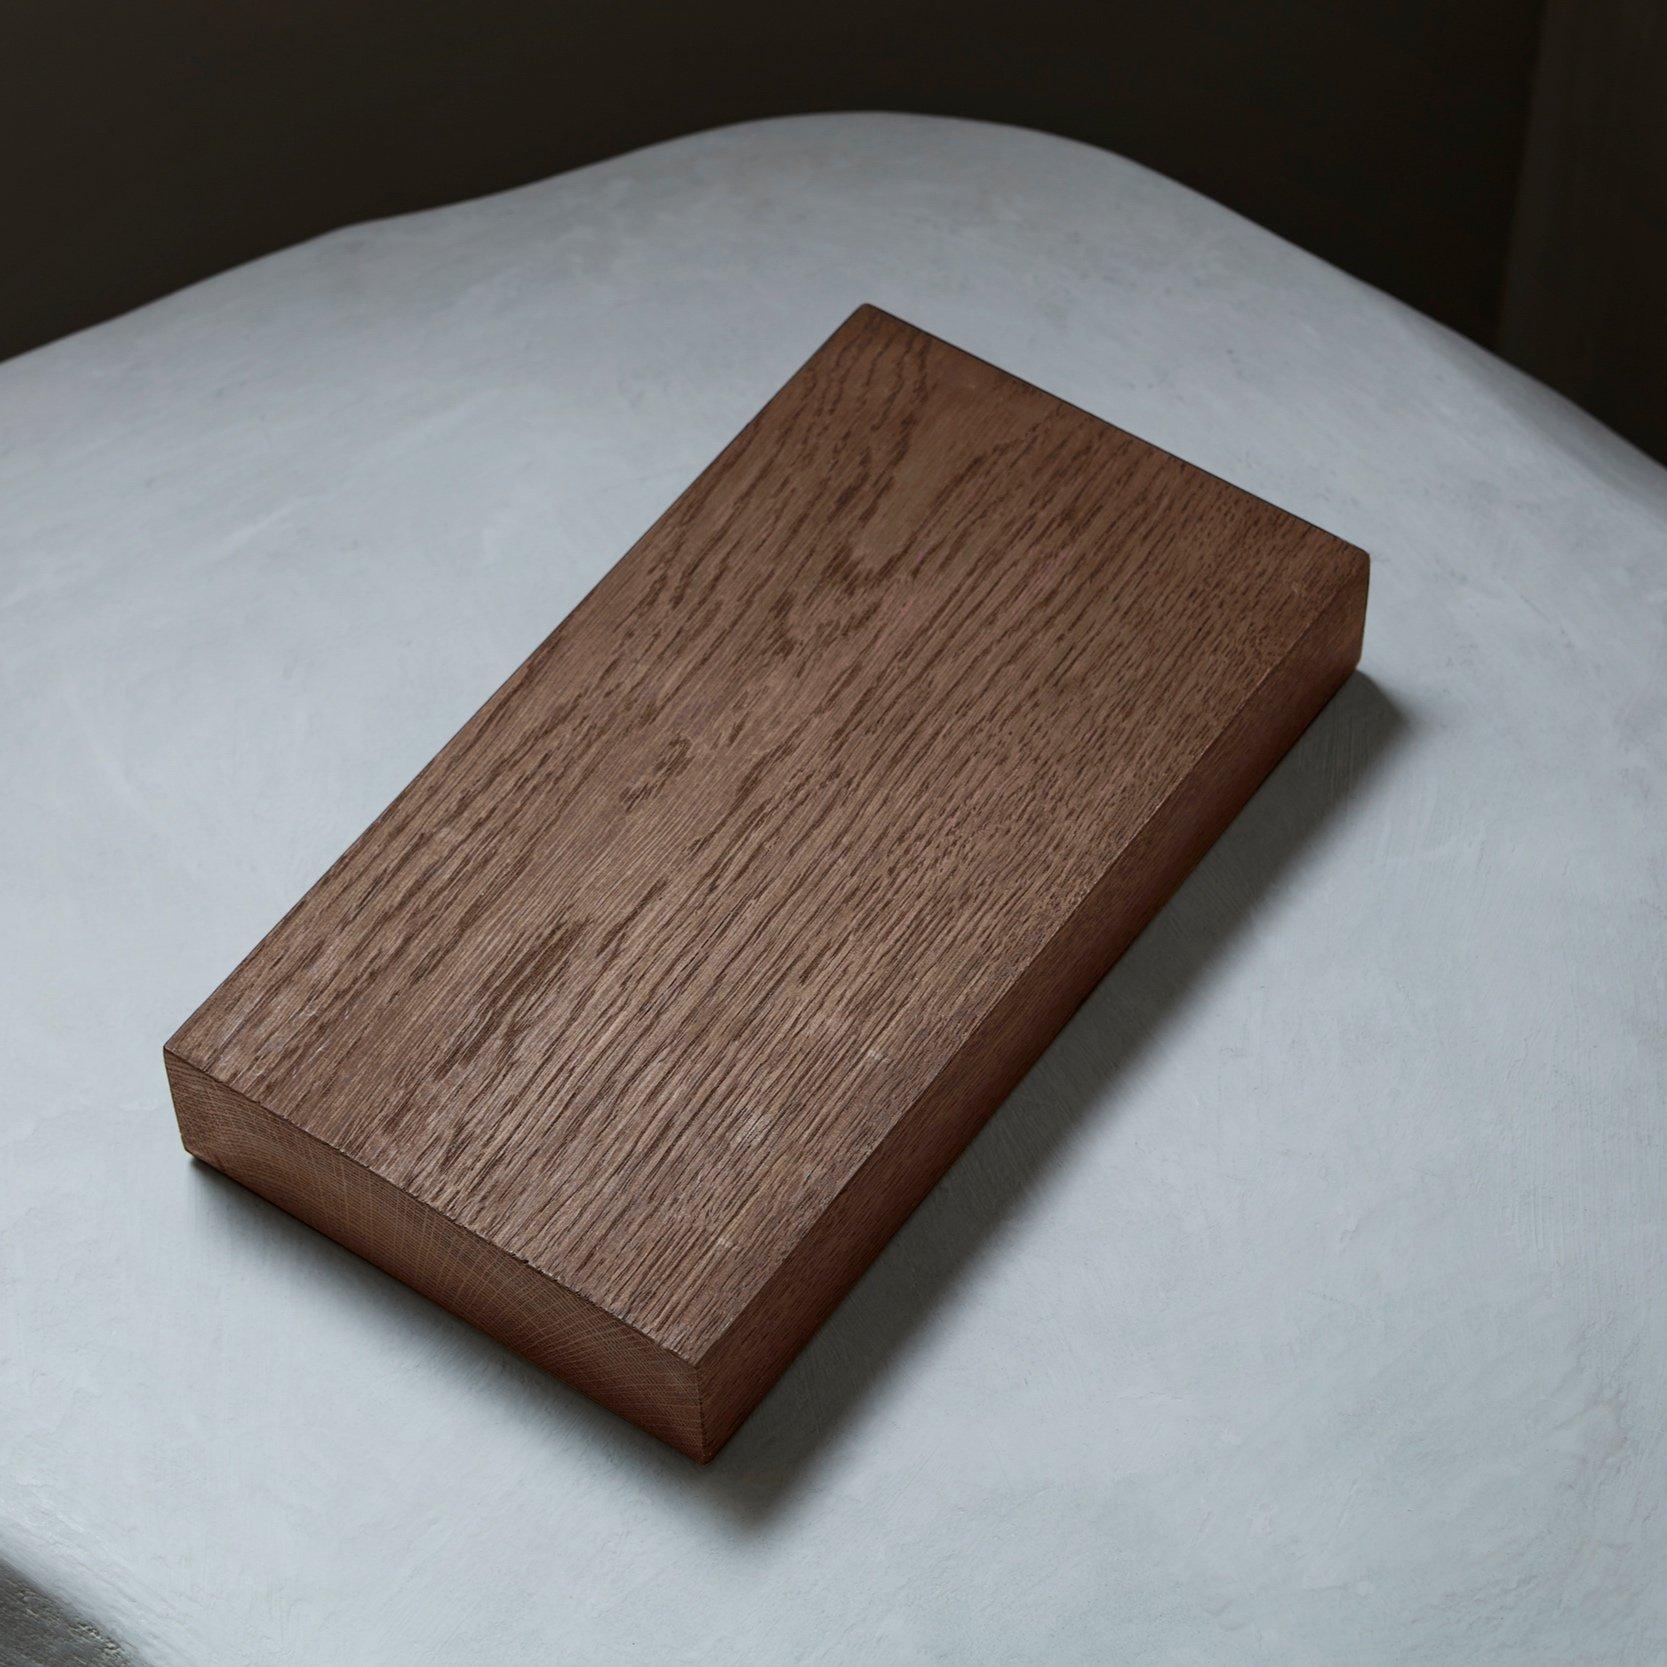 Monumental brutalist Solid Oak Wooden Brut Slim Dining Table For Sale 2